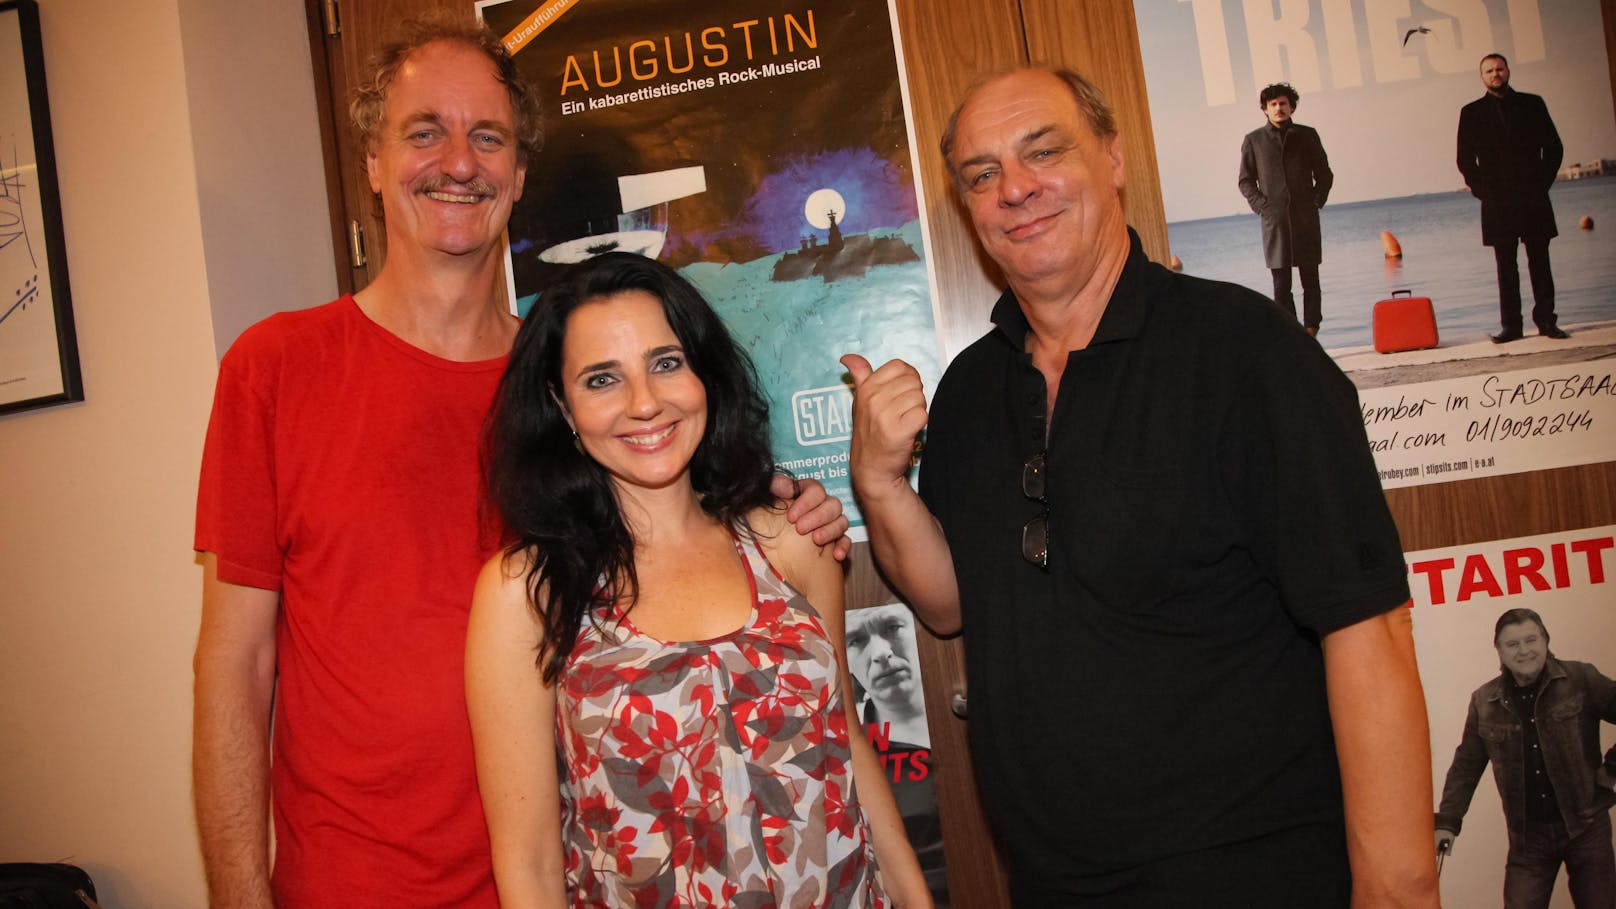 Wolfgang Katzer spielte 2012 mit Manfred O. Tauchen und Nadja Maleh in "Augustin - ein kabarettistisches Rock-Musical" im Wiener Stadtsaal.